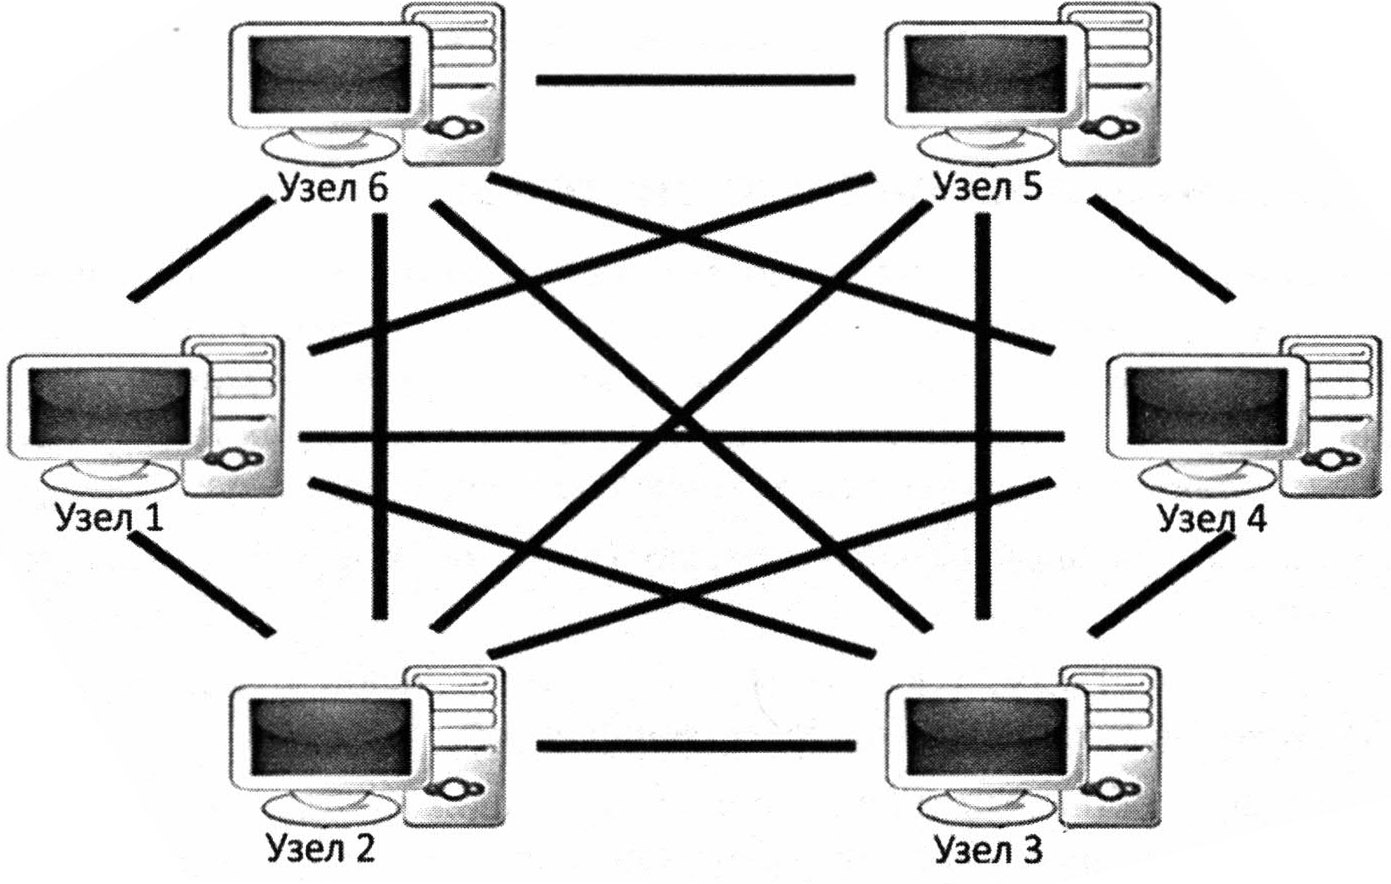 Децентрализованная пиринговая система «каодый-с-каждым»